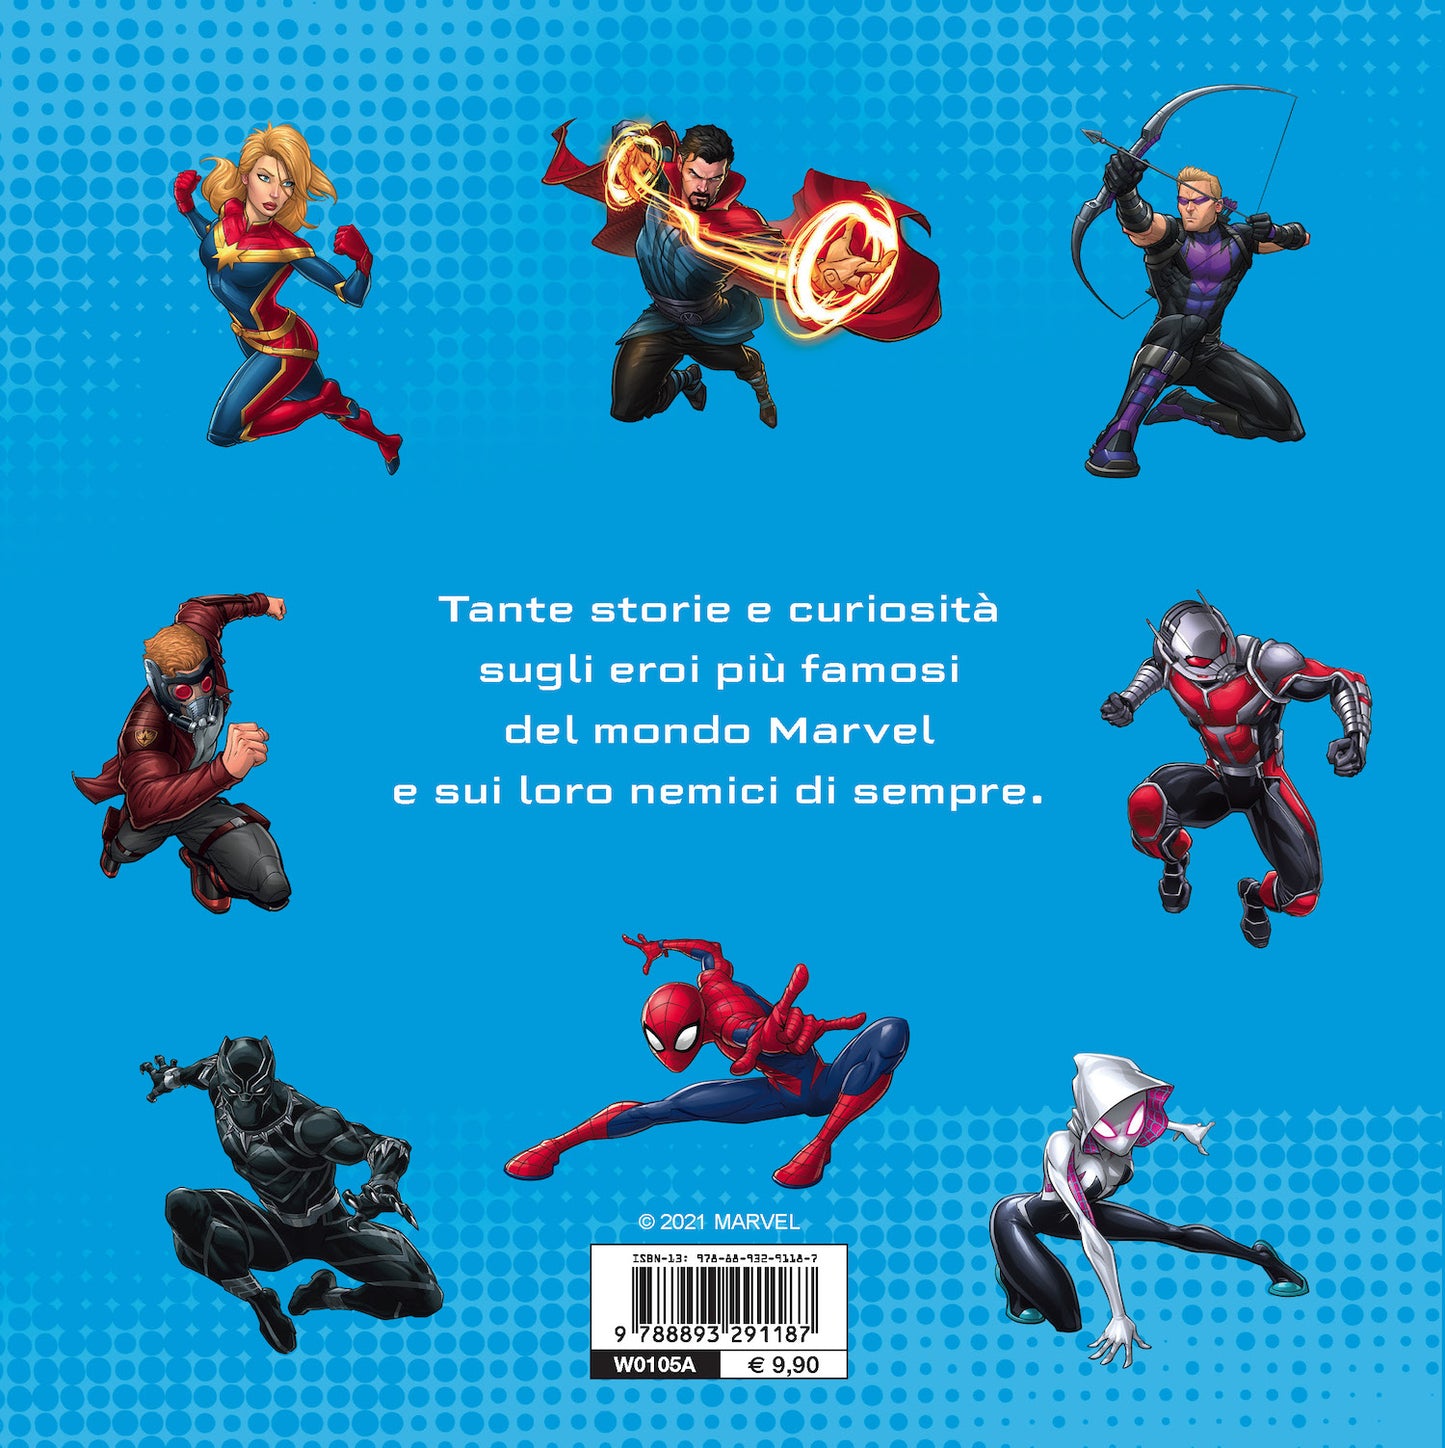 Chi è chi? Universo Marvel. 40 storie di eroi e dei loro segreti